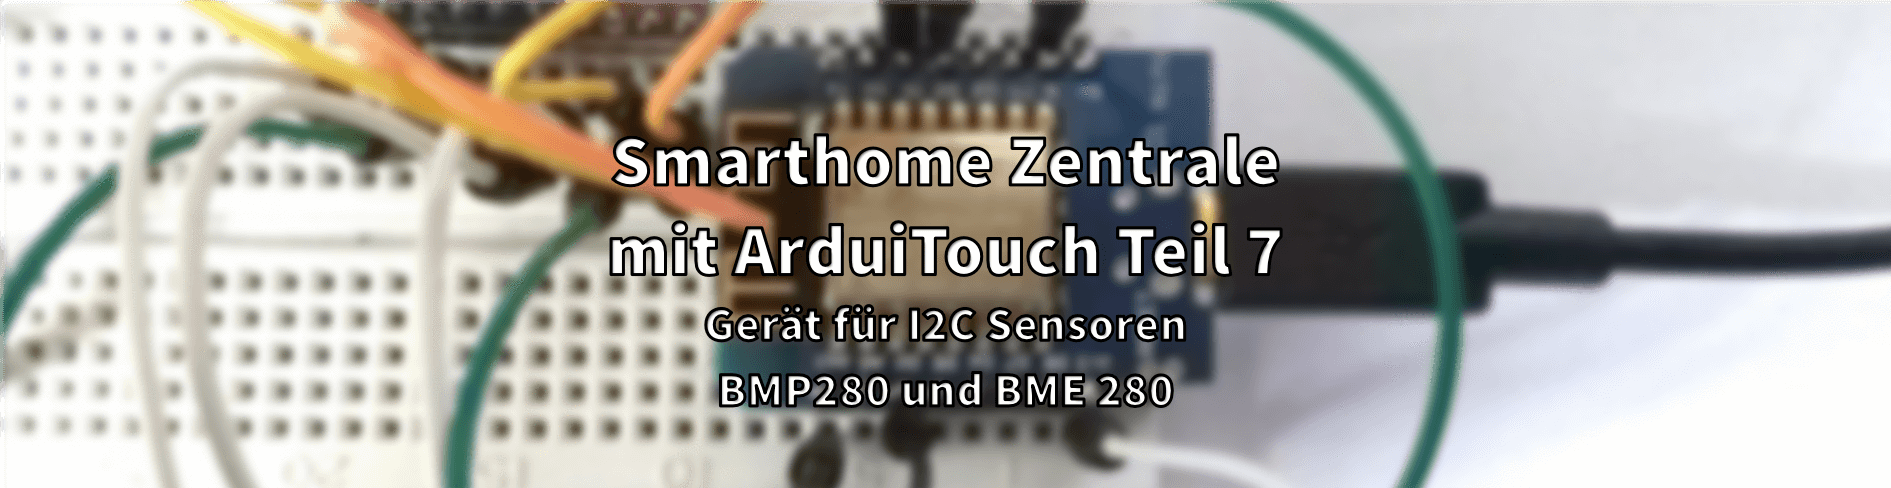 Smarthome Zentrale mit ArduiTouch Teil 7 - Gerät für I2C Sensoren BMP280 und BME 280 - AZ-Delivery